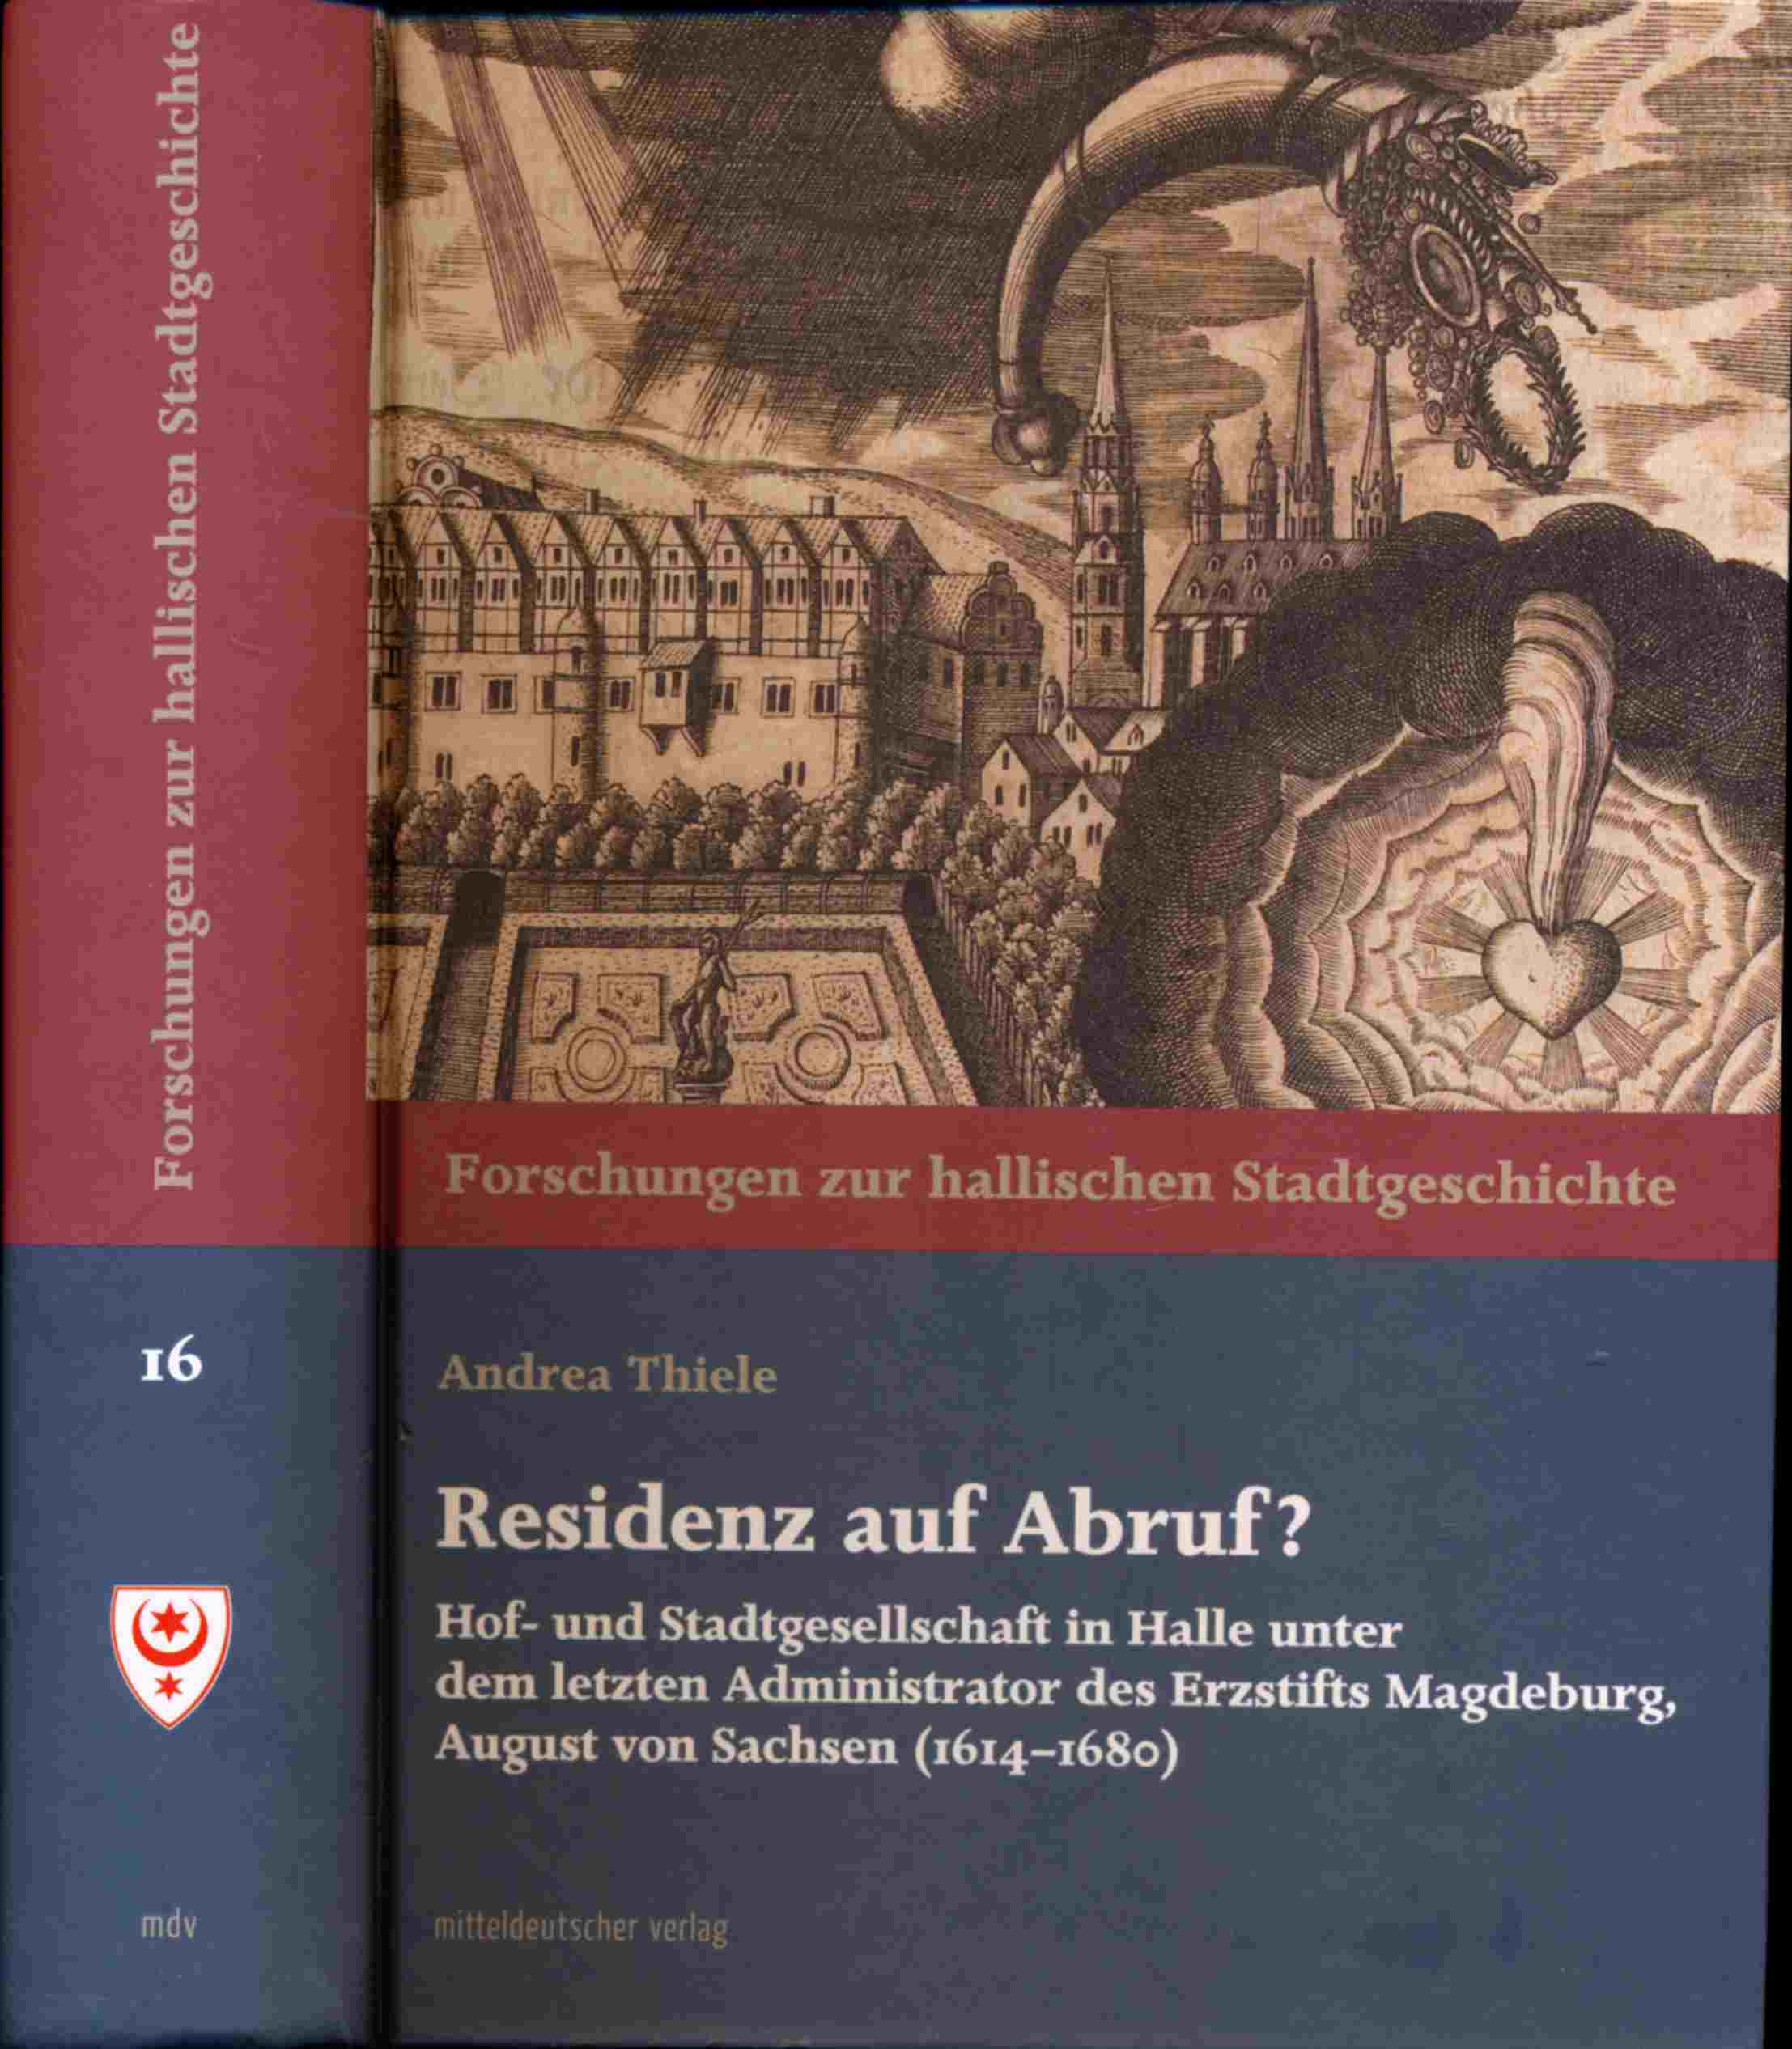 THIELE, Andrea  Residenz auf Abruf? Hof- und Stadtgesellschaft in Halle unter dem letzten Administrator des Erzstifts Magdeburg, August von Sachsen (1614-1680). 